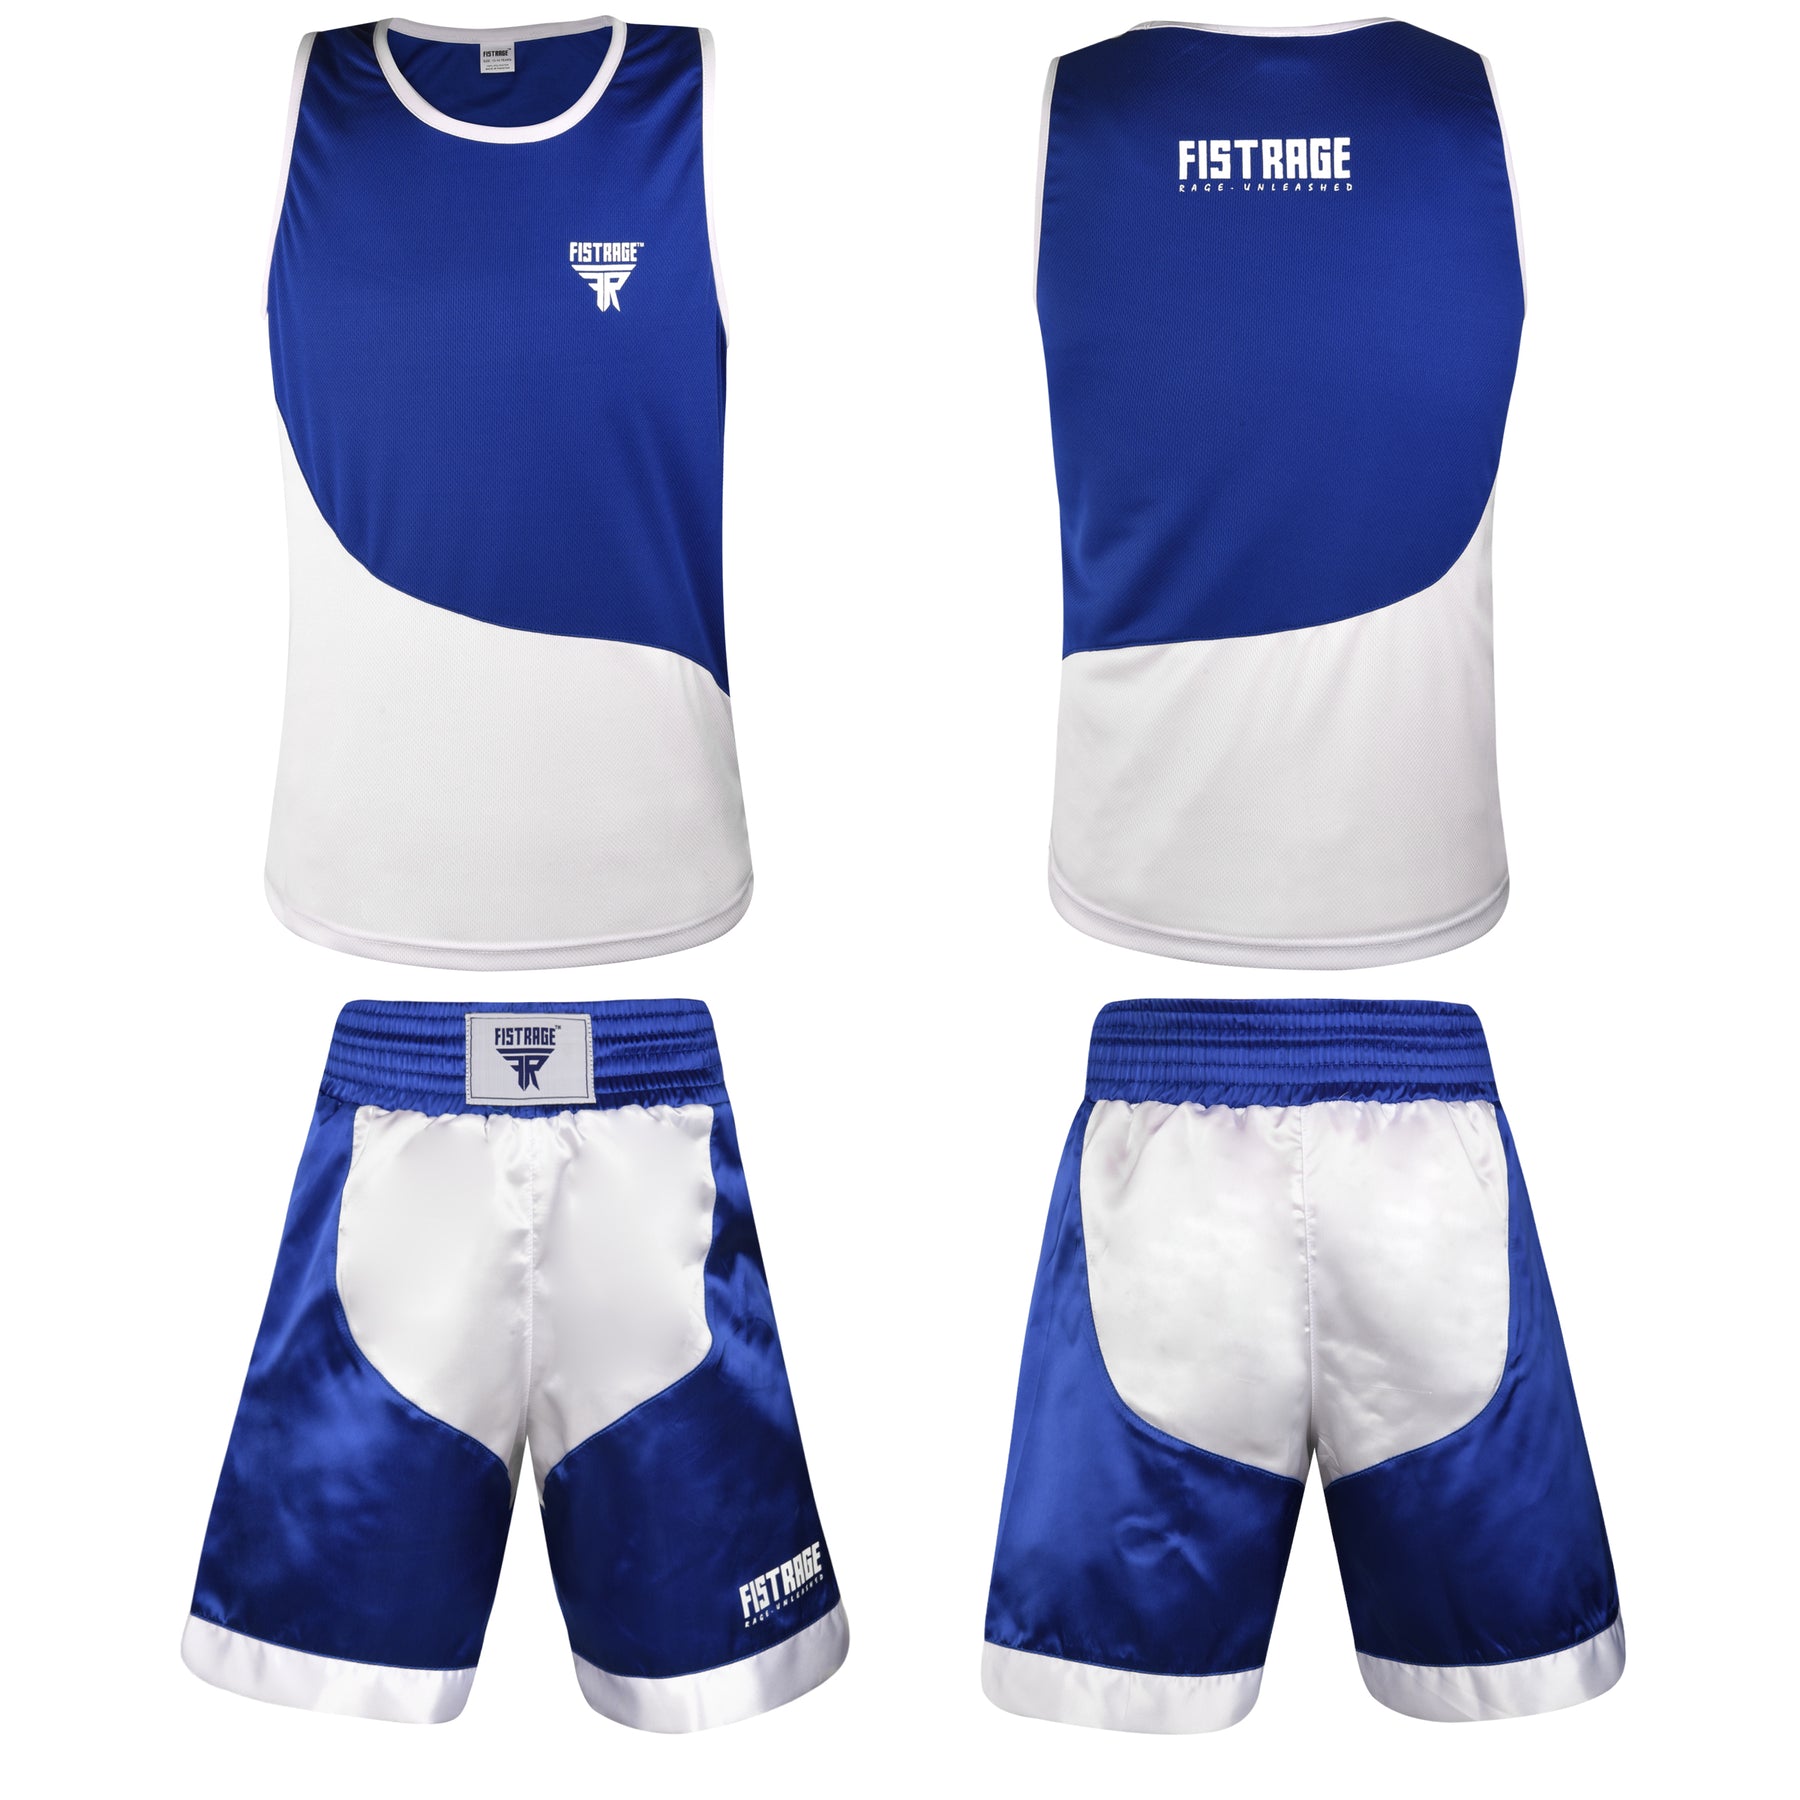 Kids Boxing Uniform Set 2PCS Top & Shorts - Blue White